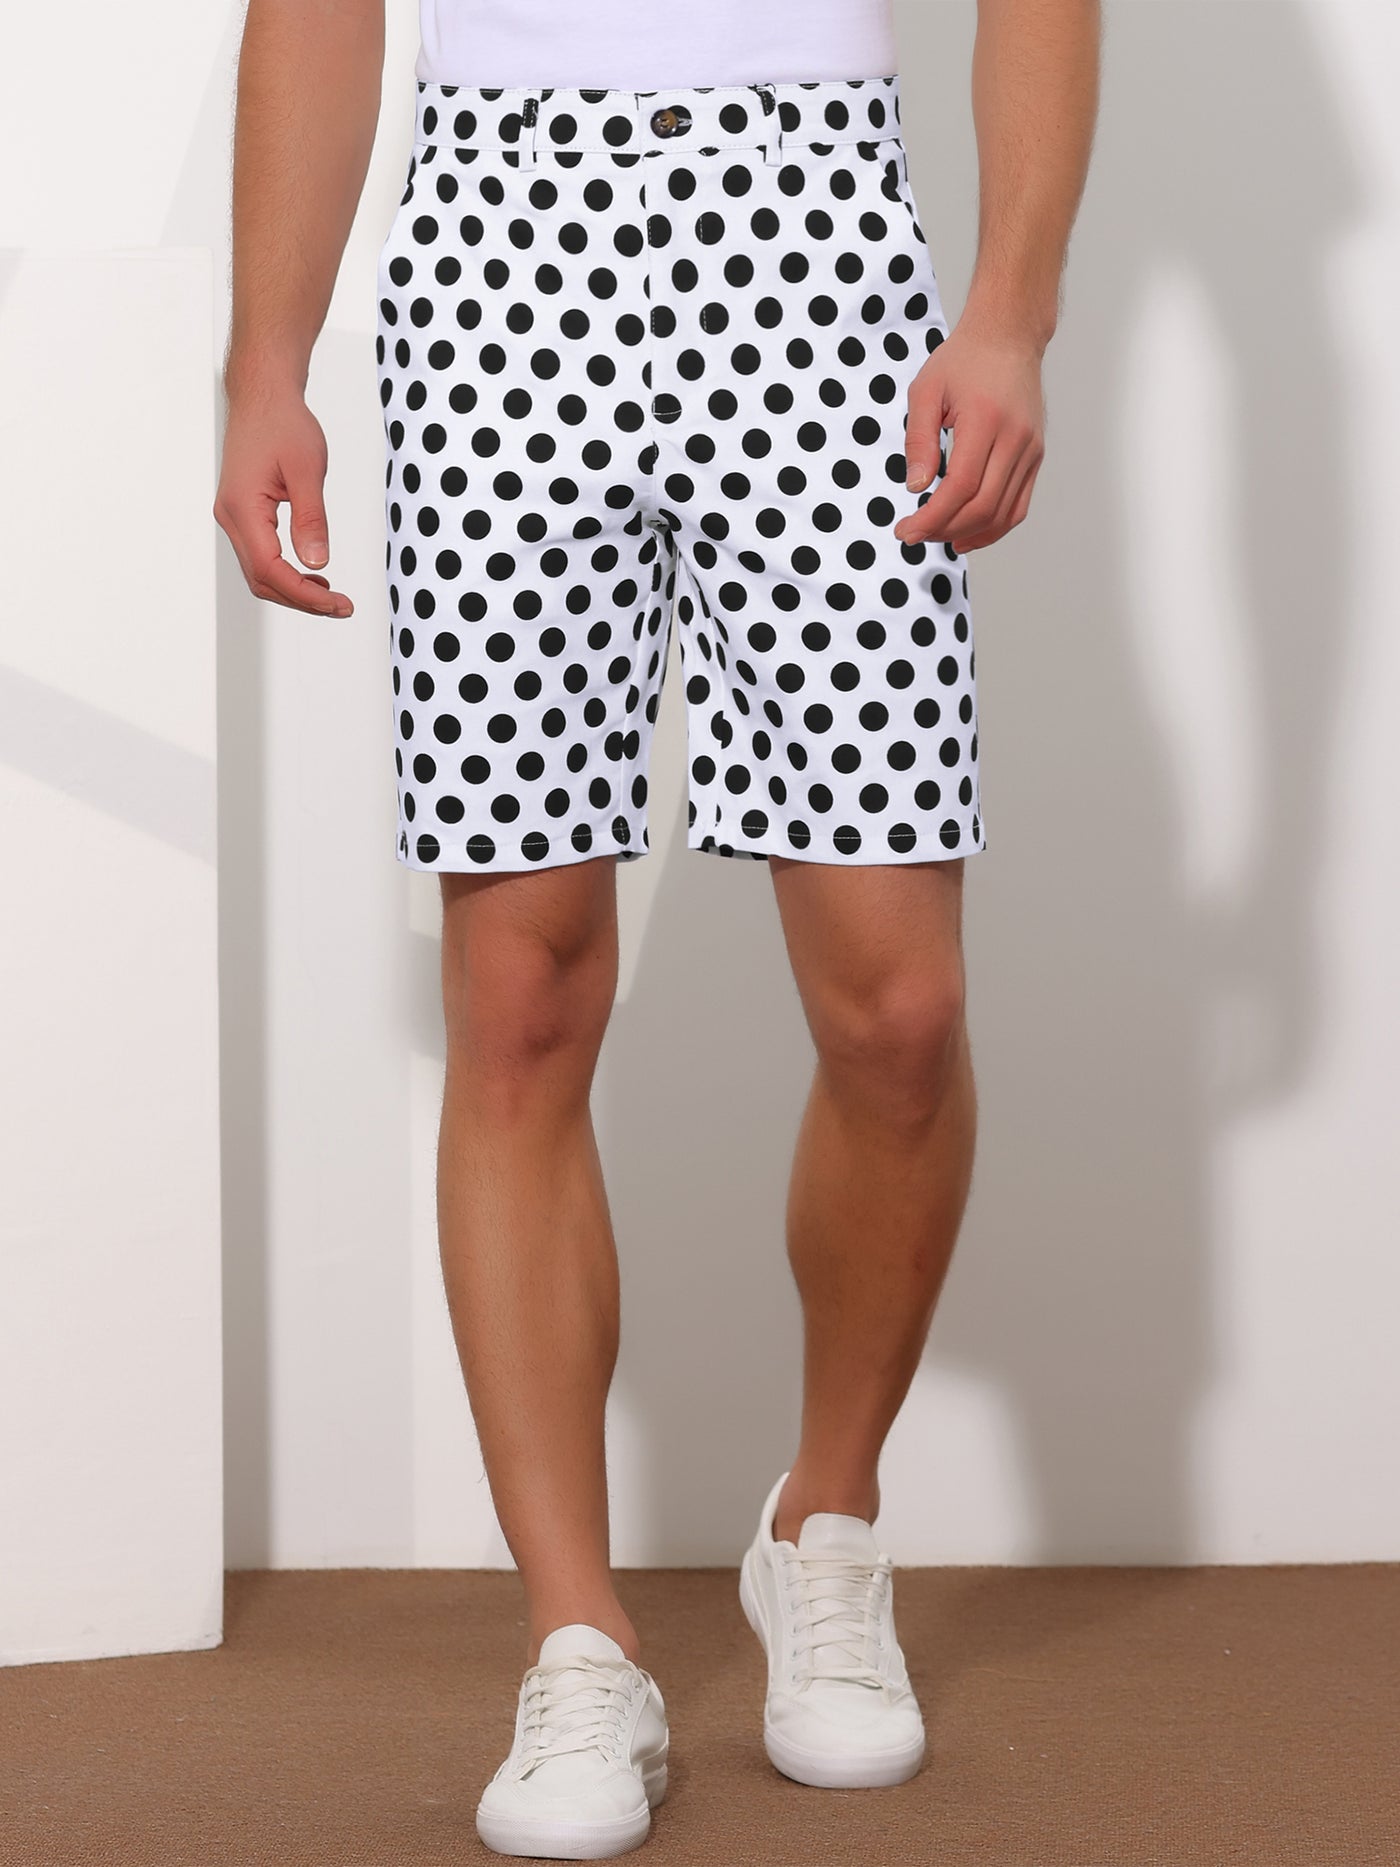 Bublédon Polka Dots Summer Comfort Flat Front Patterned Chino Shorts